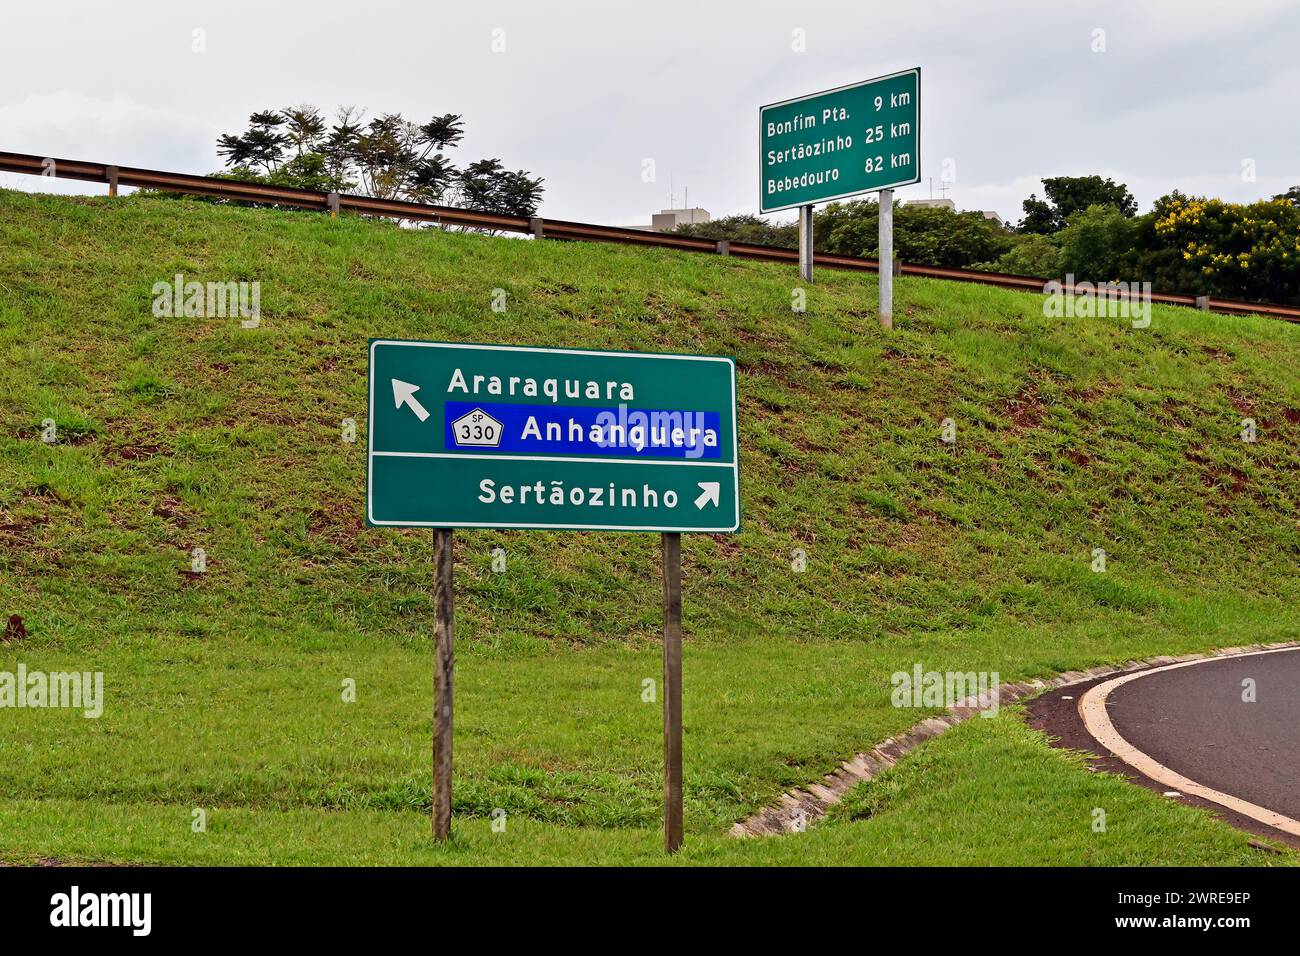 Wegbeschilderung für Straßen und nahe gelegene Städte in Ribeirao Preto, Sao Paulo, Brasilien Stockfoto